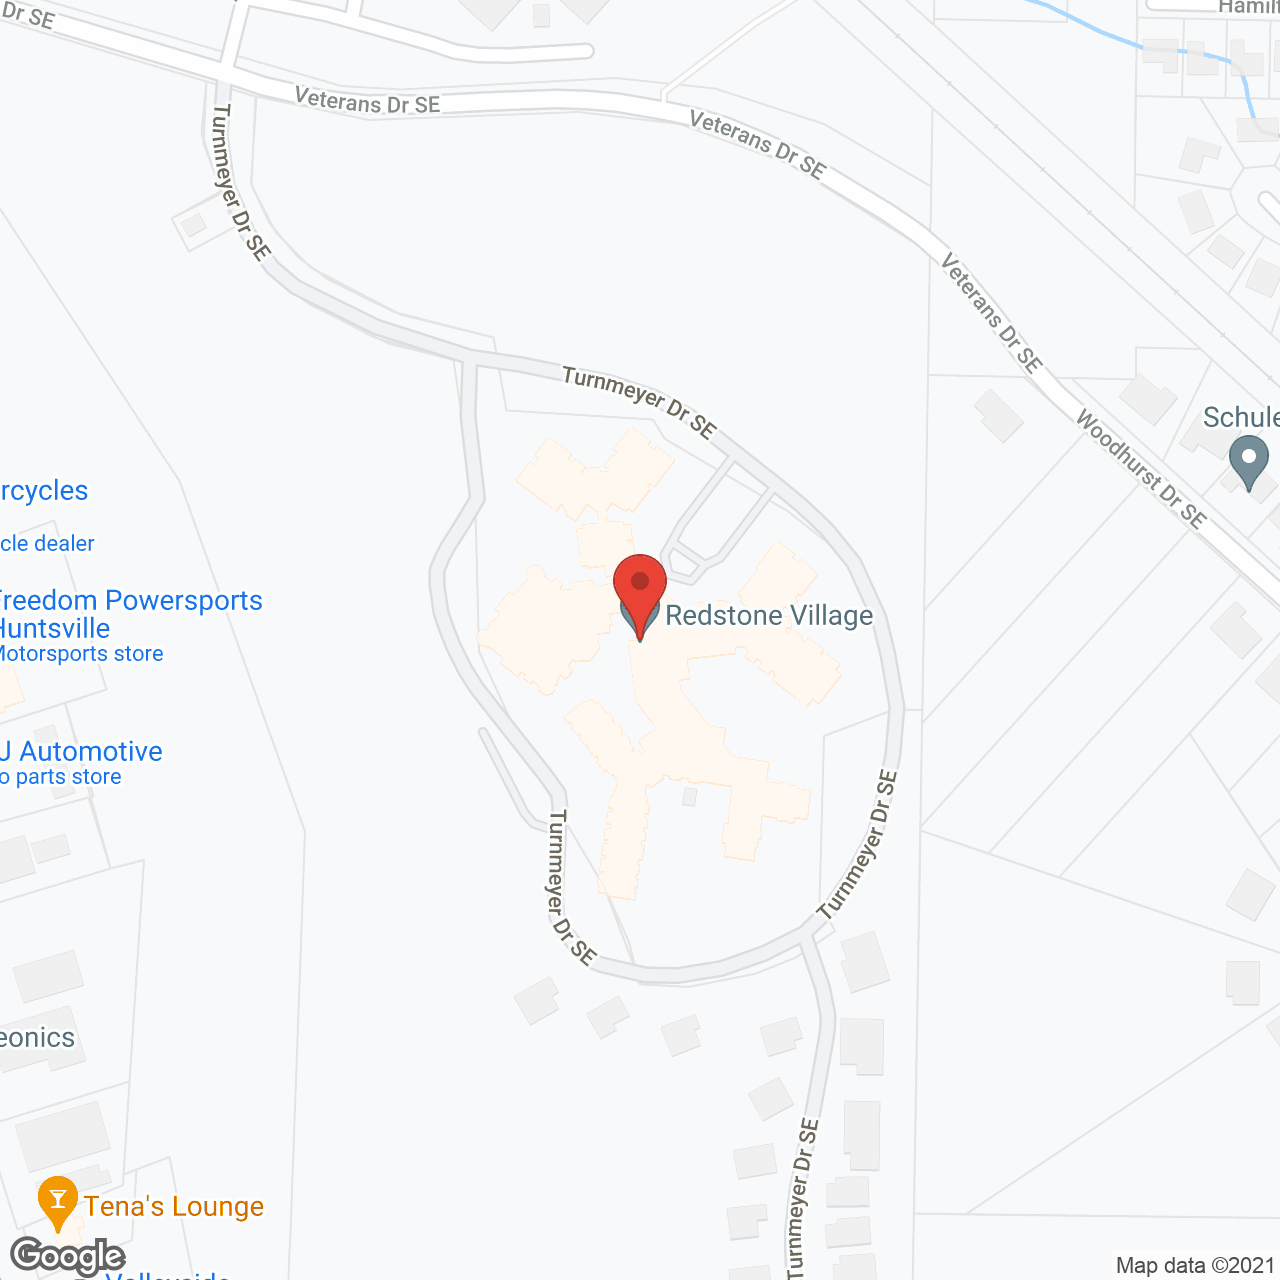 Redstone Village in google map